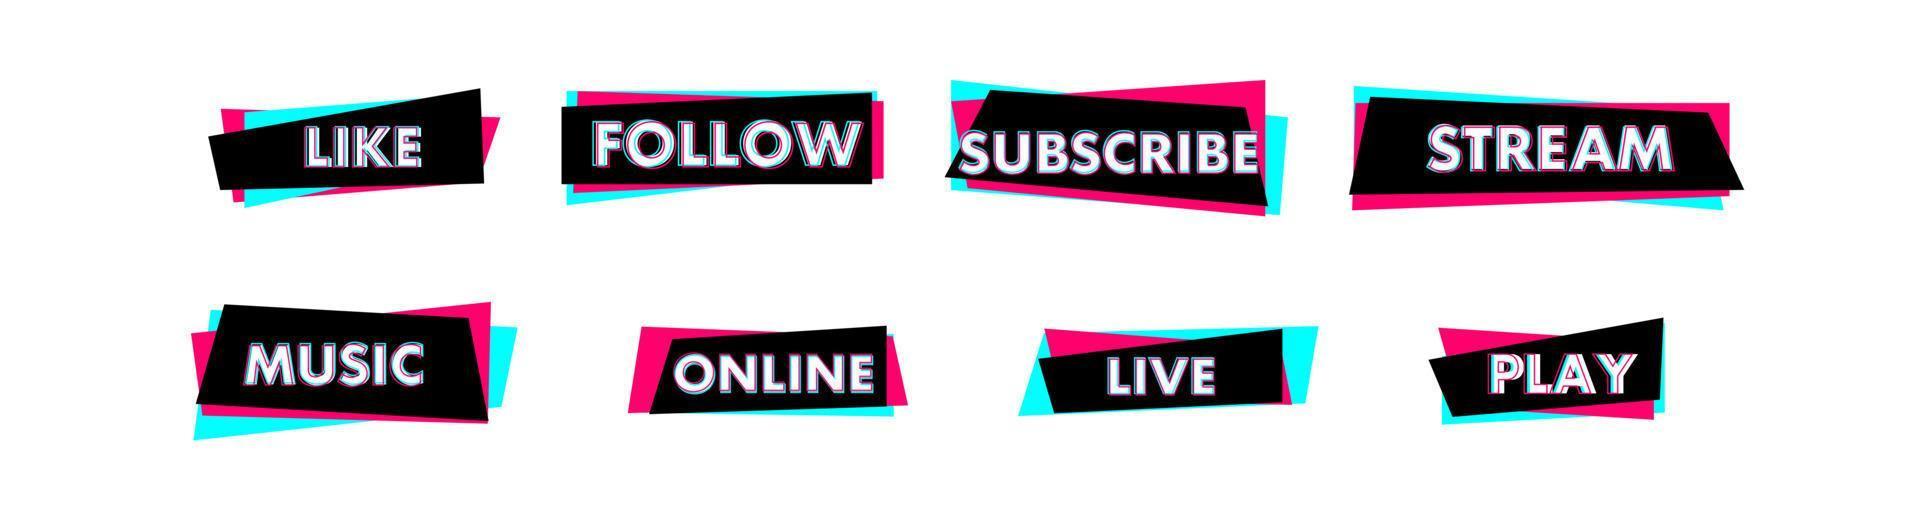 conjunto de pegatinas para una popular red social. pegatina negra - azul - rosa sobre fondo blanco. diseño moderno de publicidad en redes sociales. ilustración vectorial vector